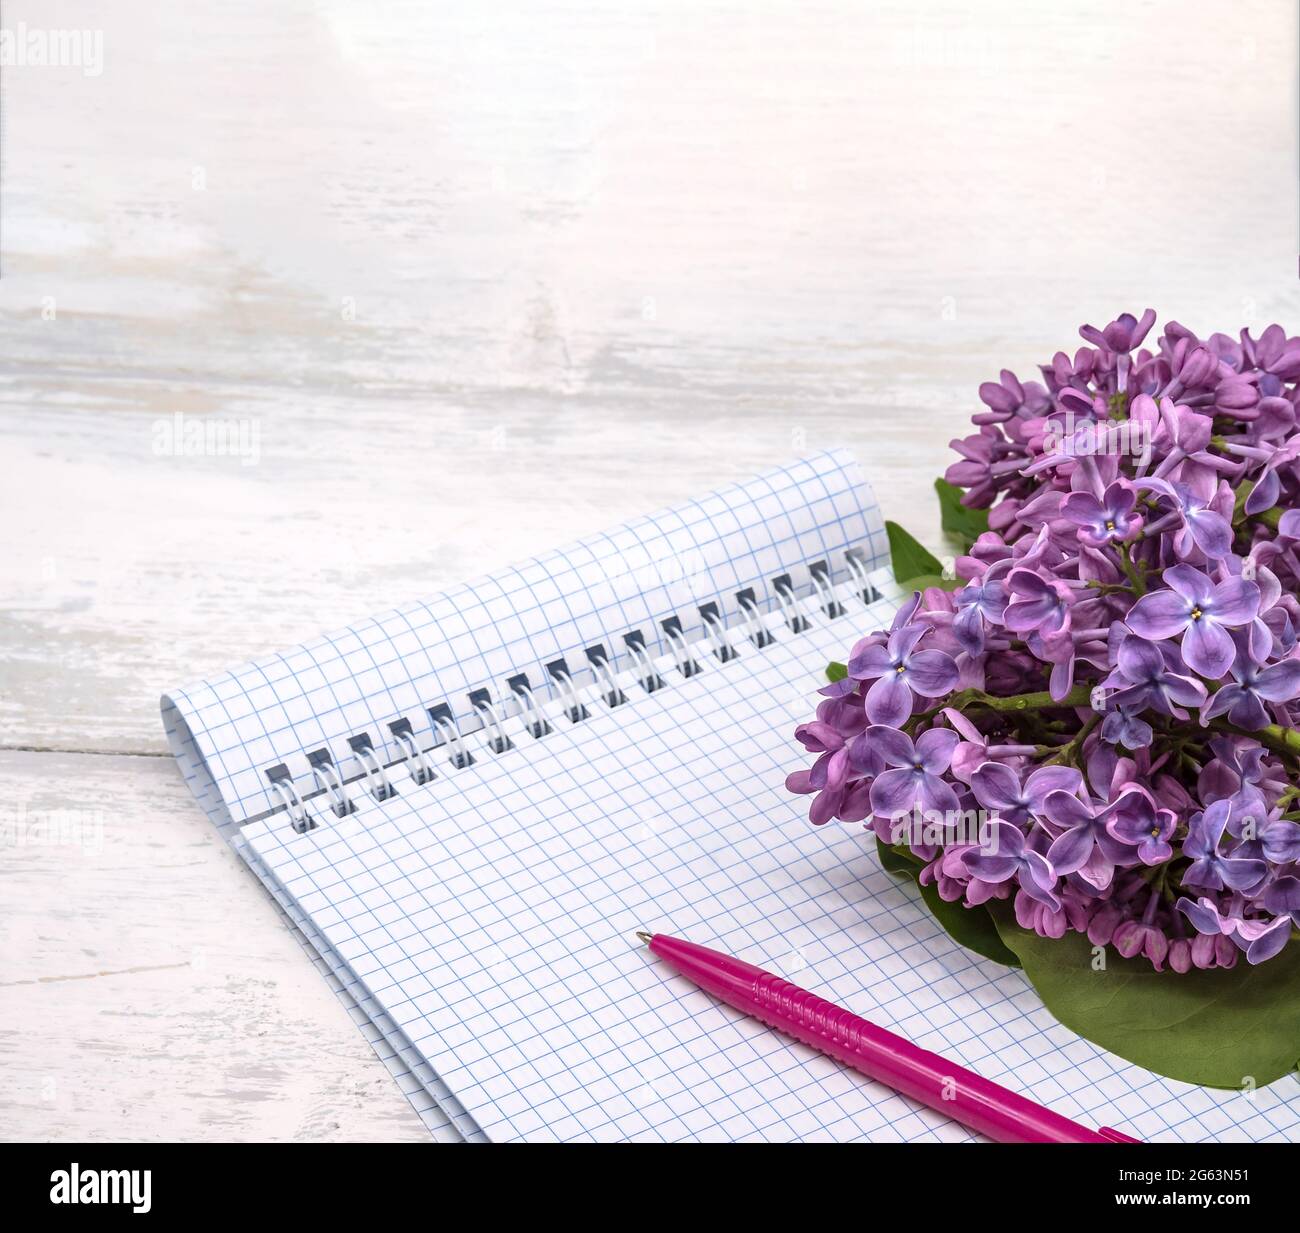 Ein Notizbuch und eine Blume. Ein Notizbuch mit einem Stift und Blumen. Spiralnotizbuch und Stift. Copybook auf einem hölzernen Hintergrund. Stockfoto